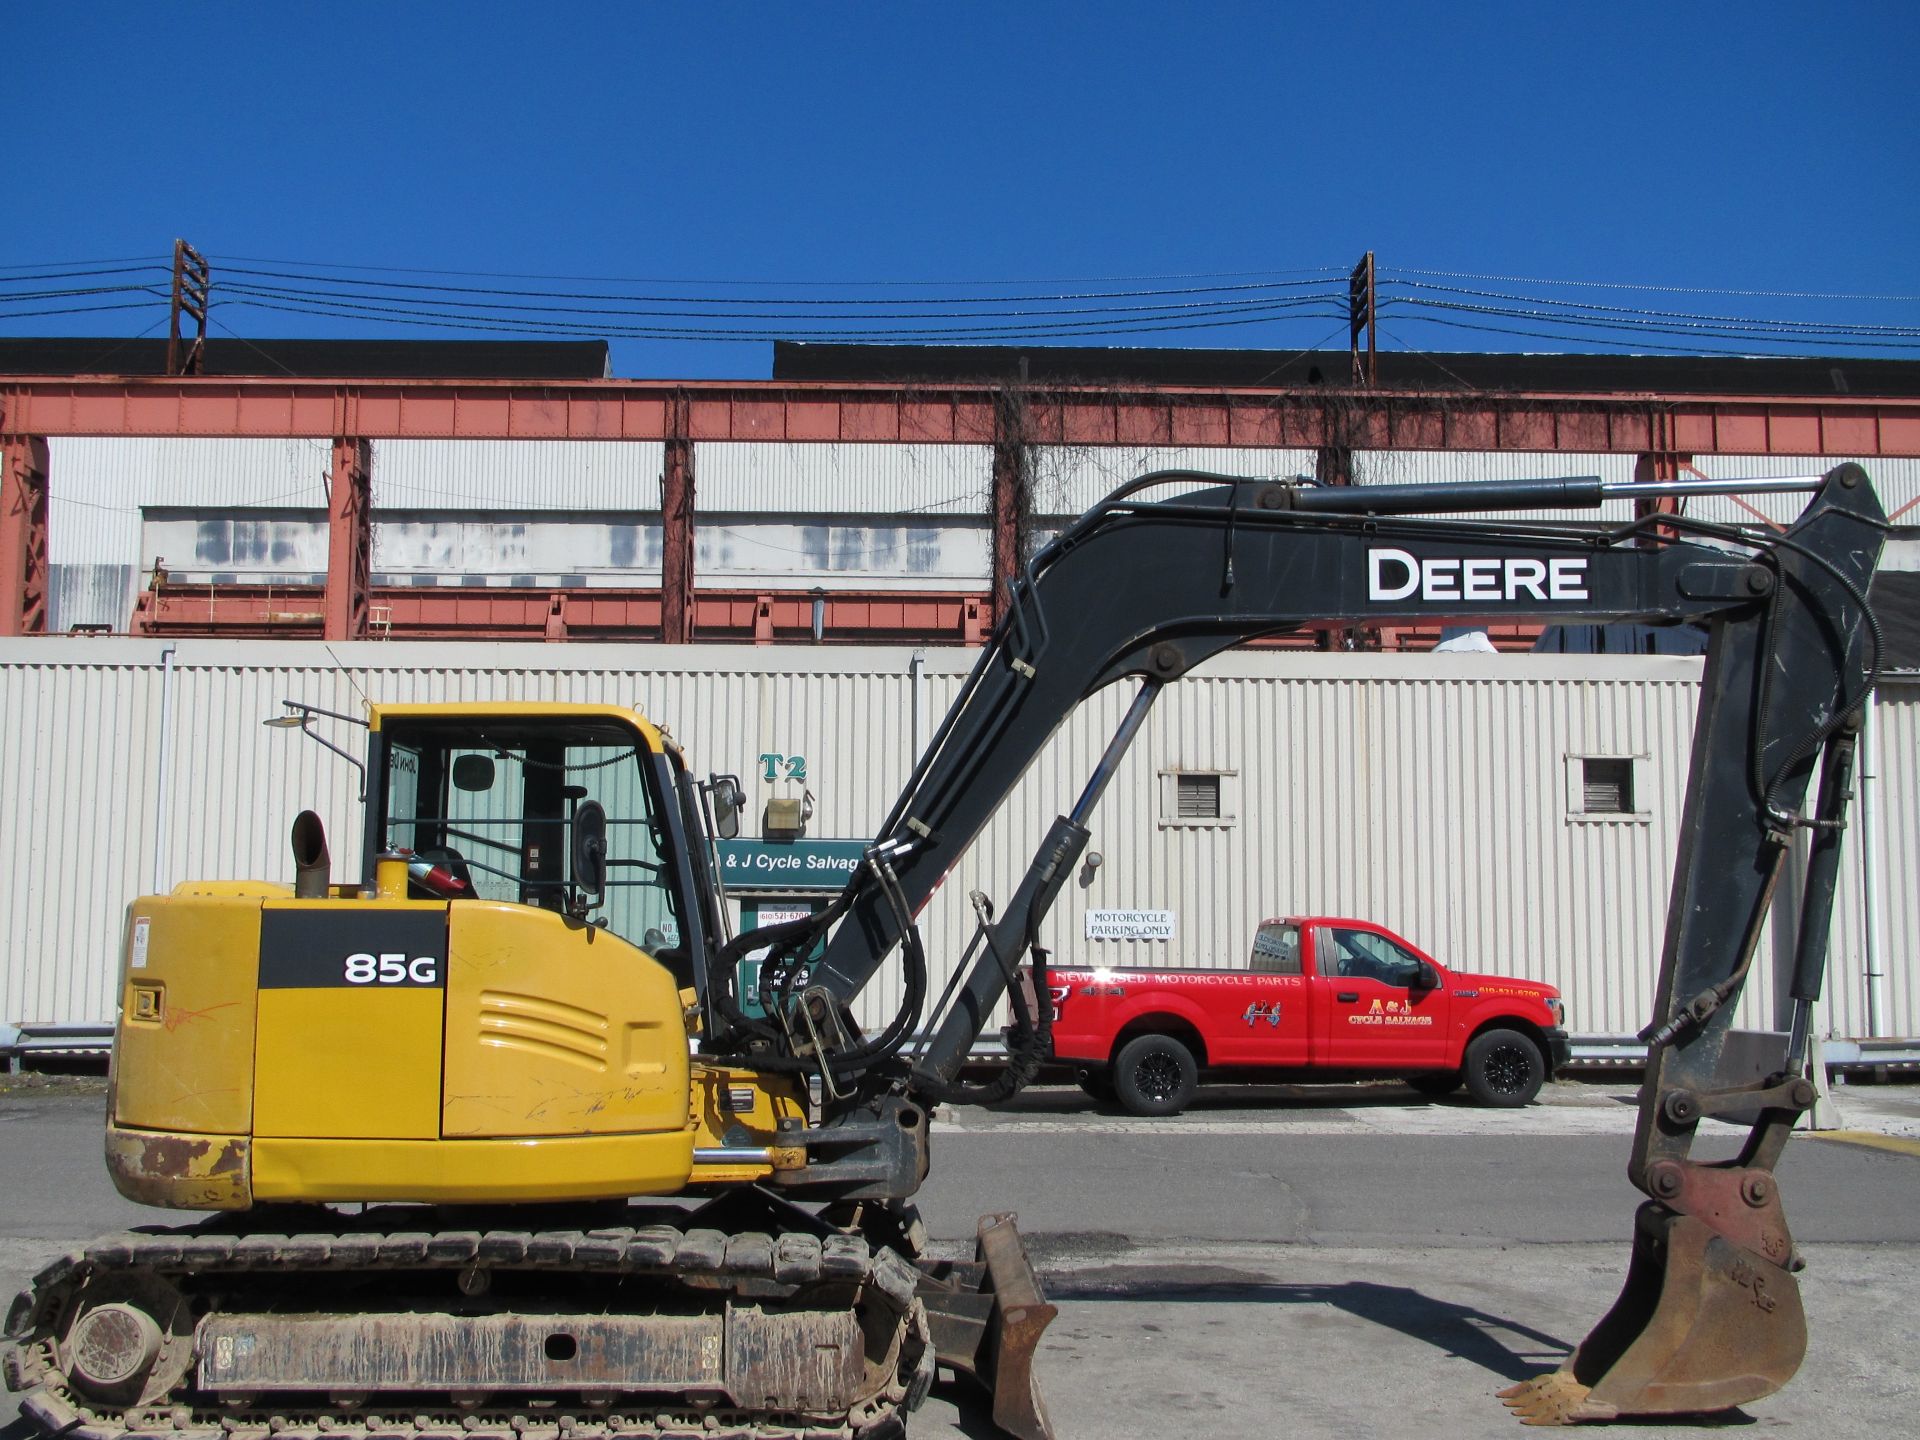 2014 John Deere 85G Excavator - Image 2 of 25